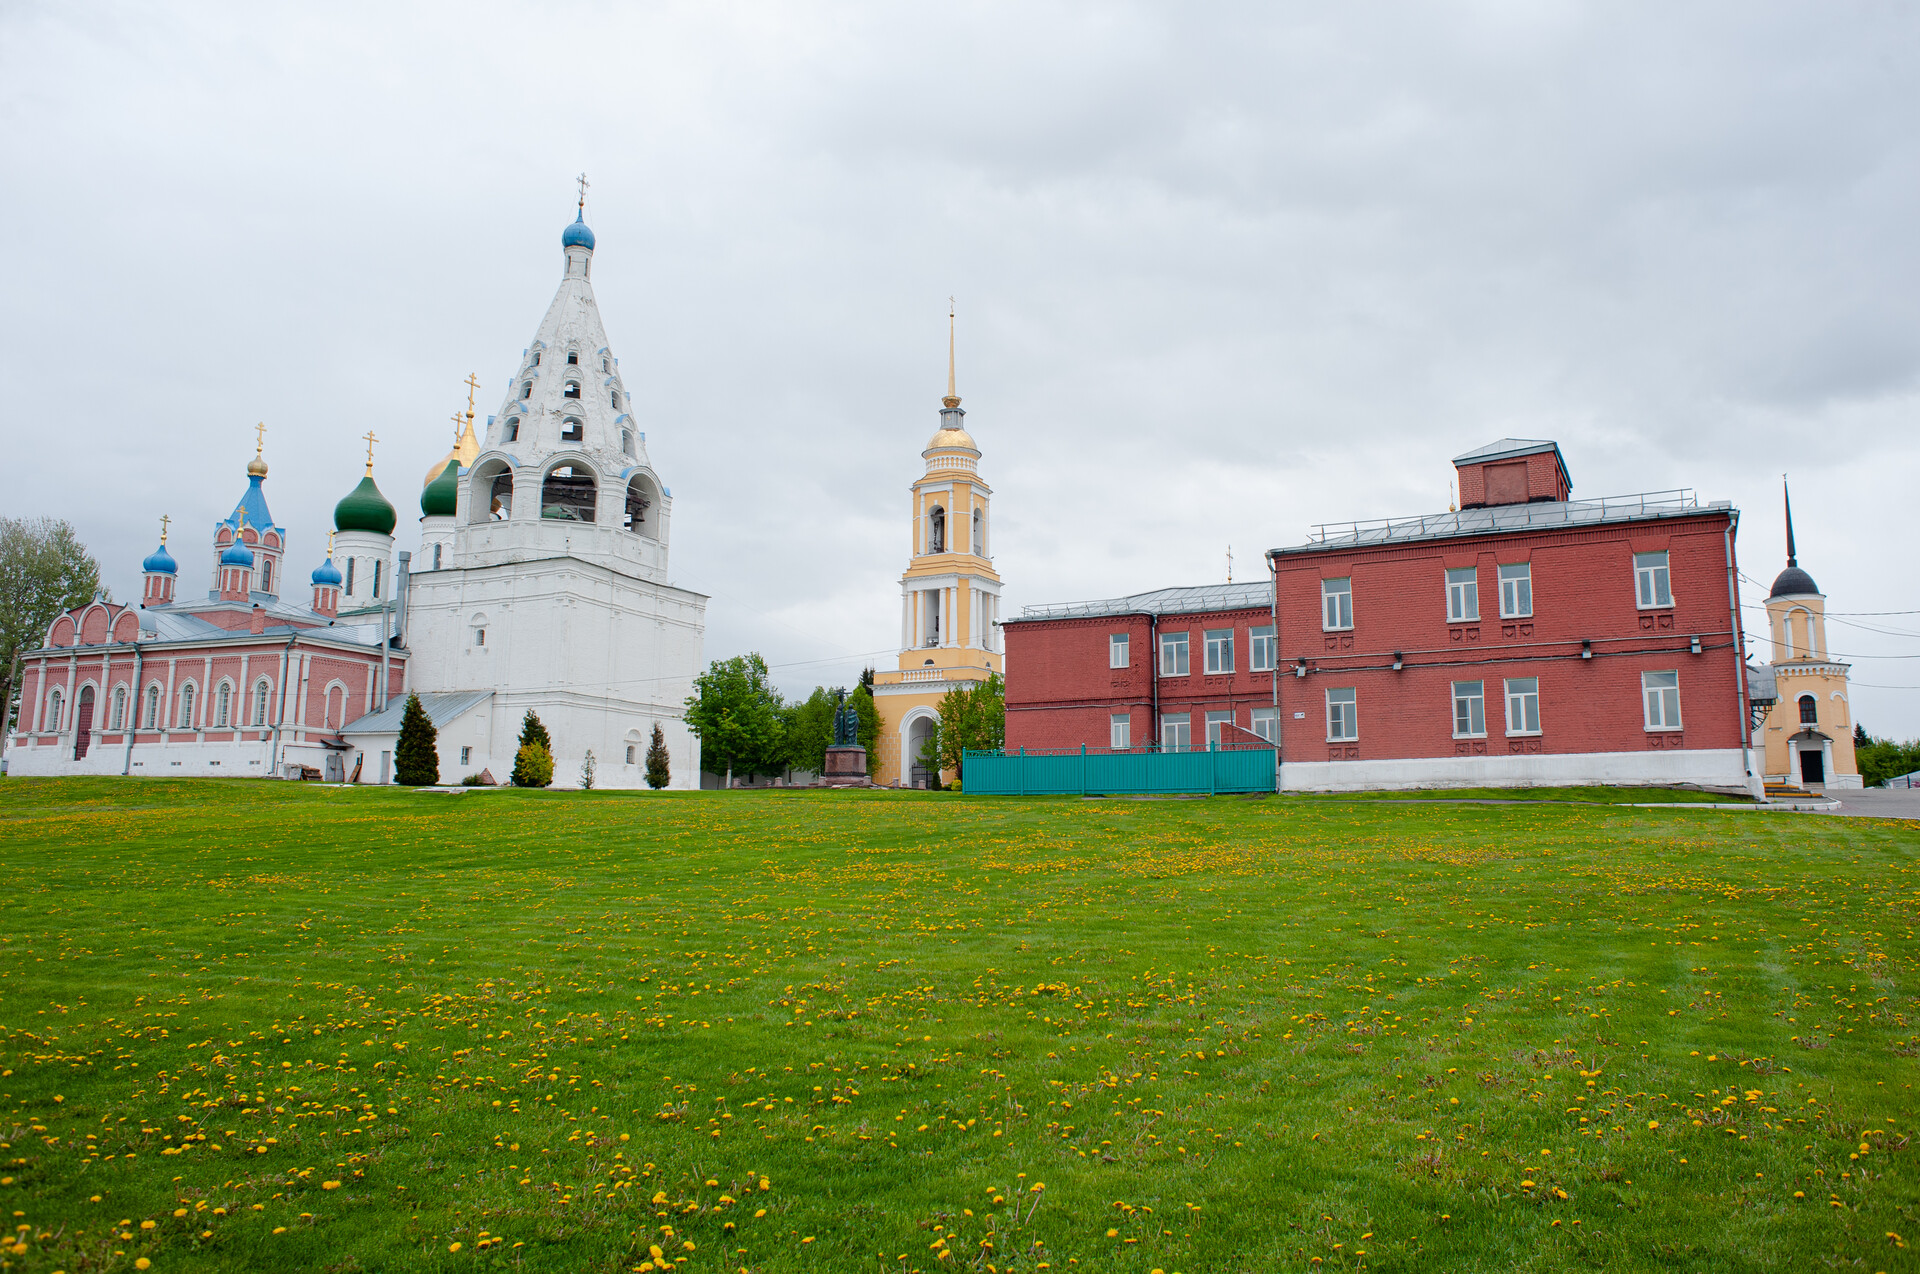 Достопримечательности Коломны: кремль, монастыри и музеи